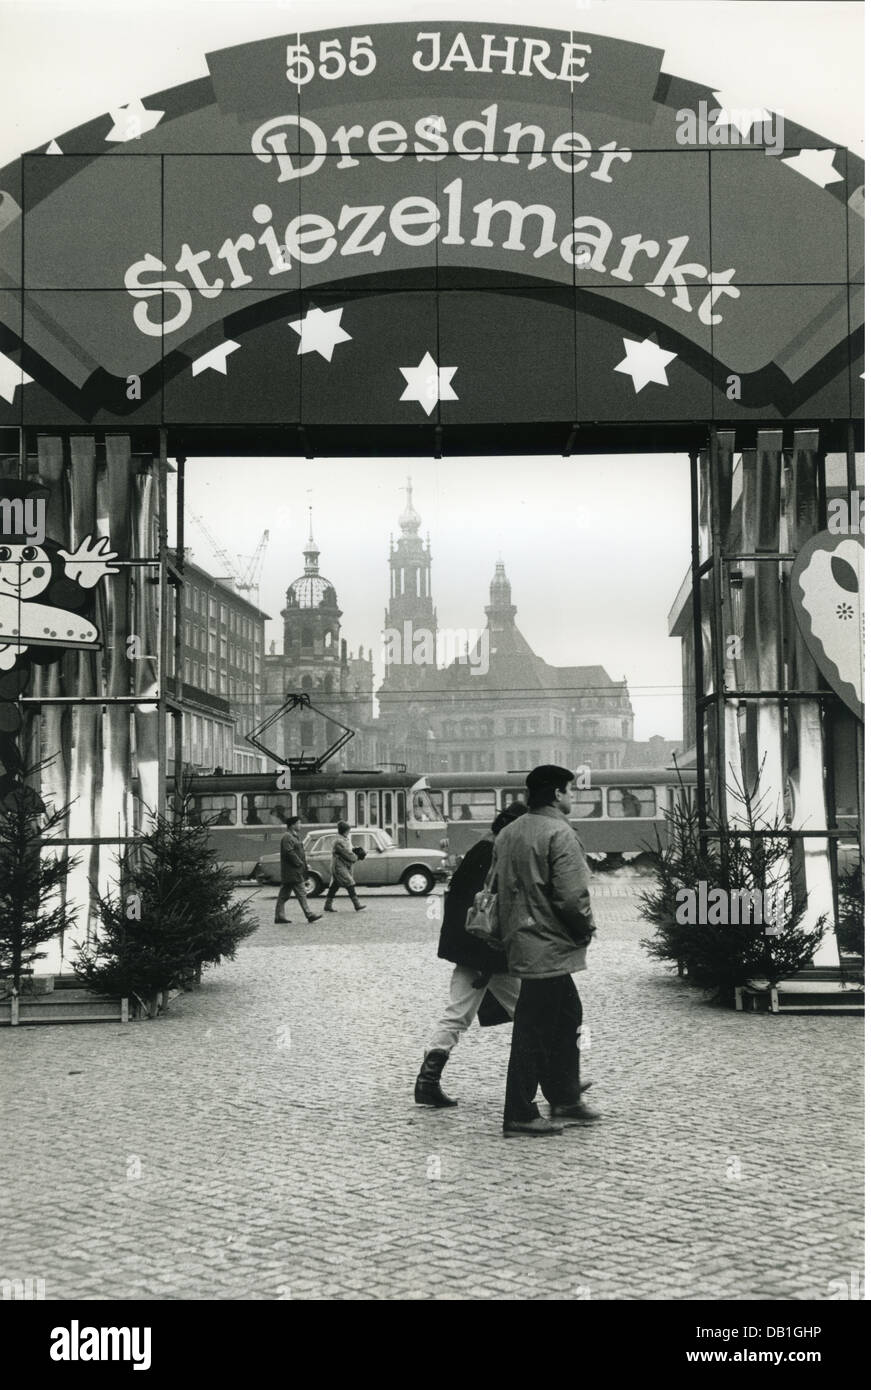 Geografia / viaggio, Germania, Dresda, '555 anni di Dresda Striezelmarkt', tradizionale mercatino di Natale sul marchio Altmark, vista verso il palazzo reale e Cappella reale, Est-Germania, inizio dicembre 1989, diritti aggiuntivi-clearences-non disponibile Foto Stock